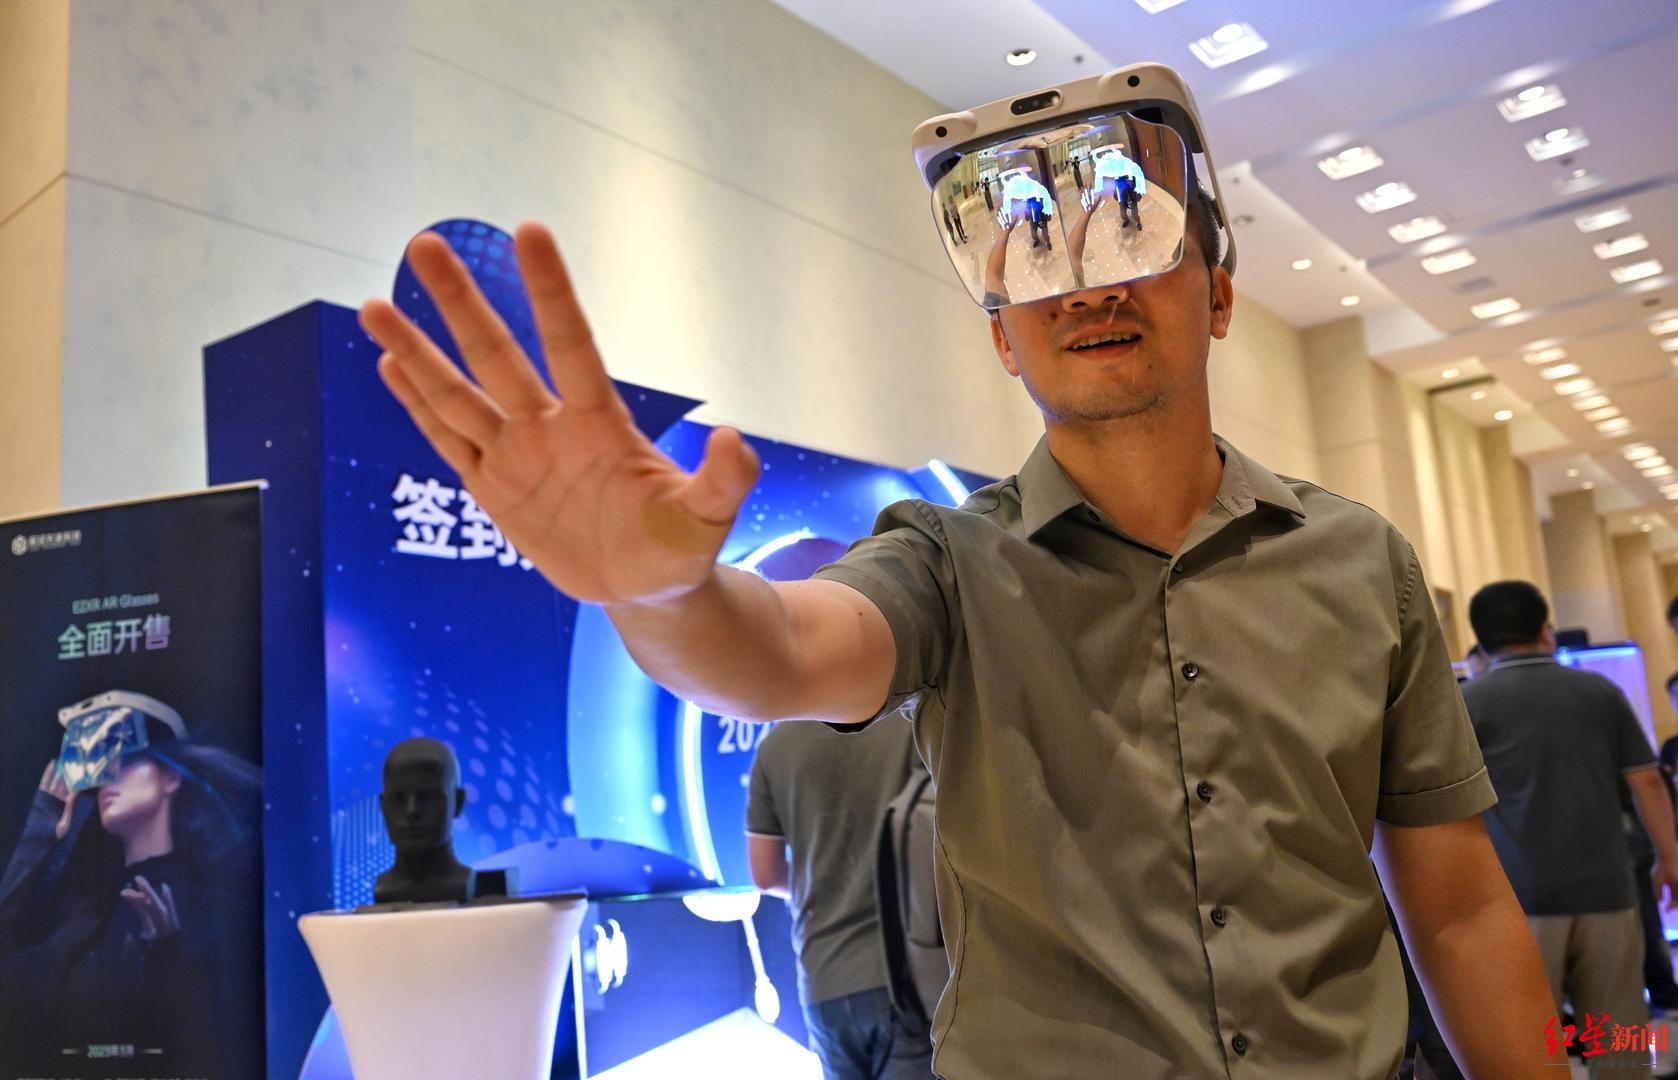 ▲2023全国元宇宙产业创新发展峰会现场展示的AR眼镜